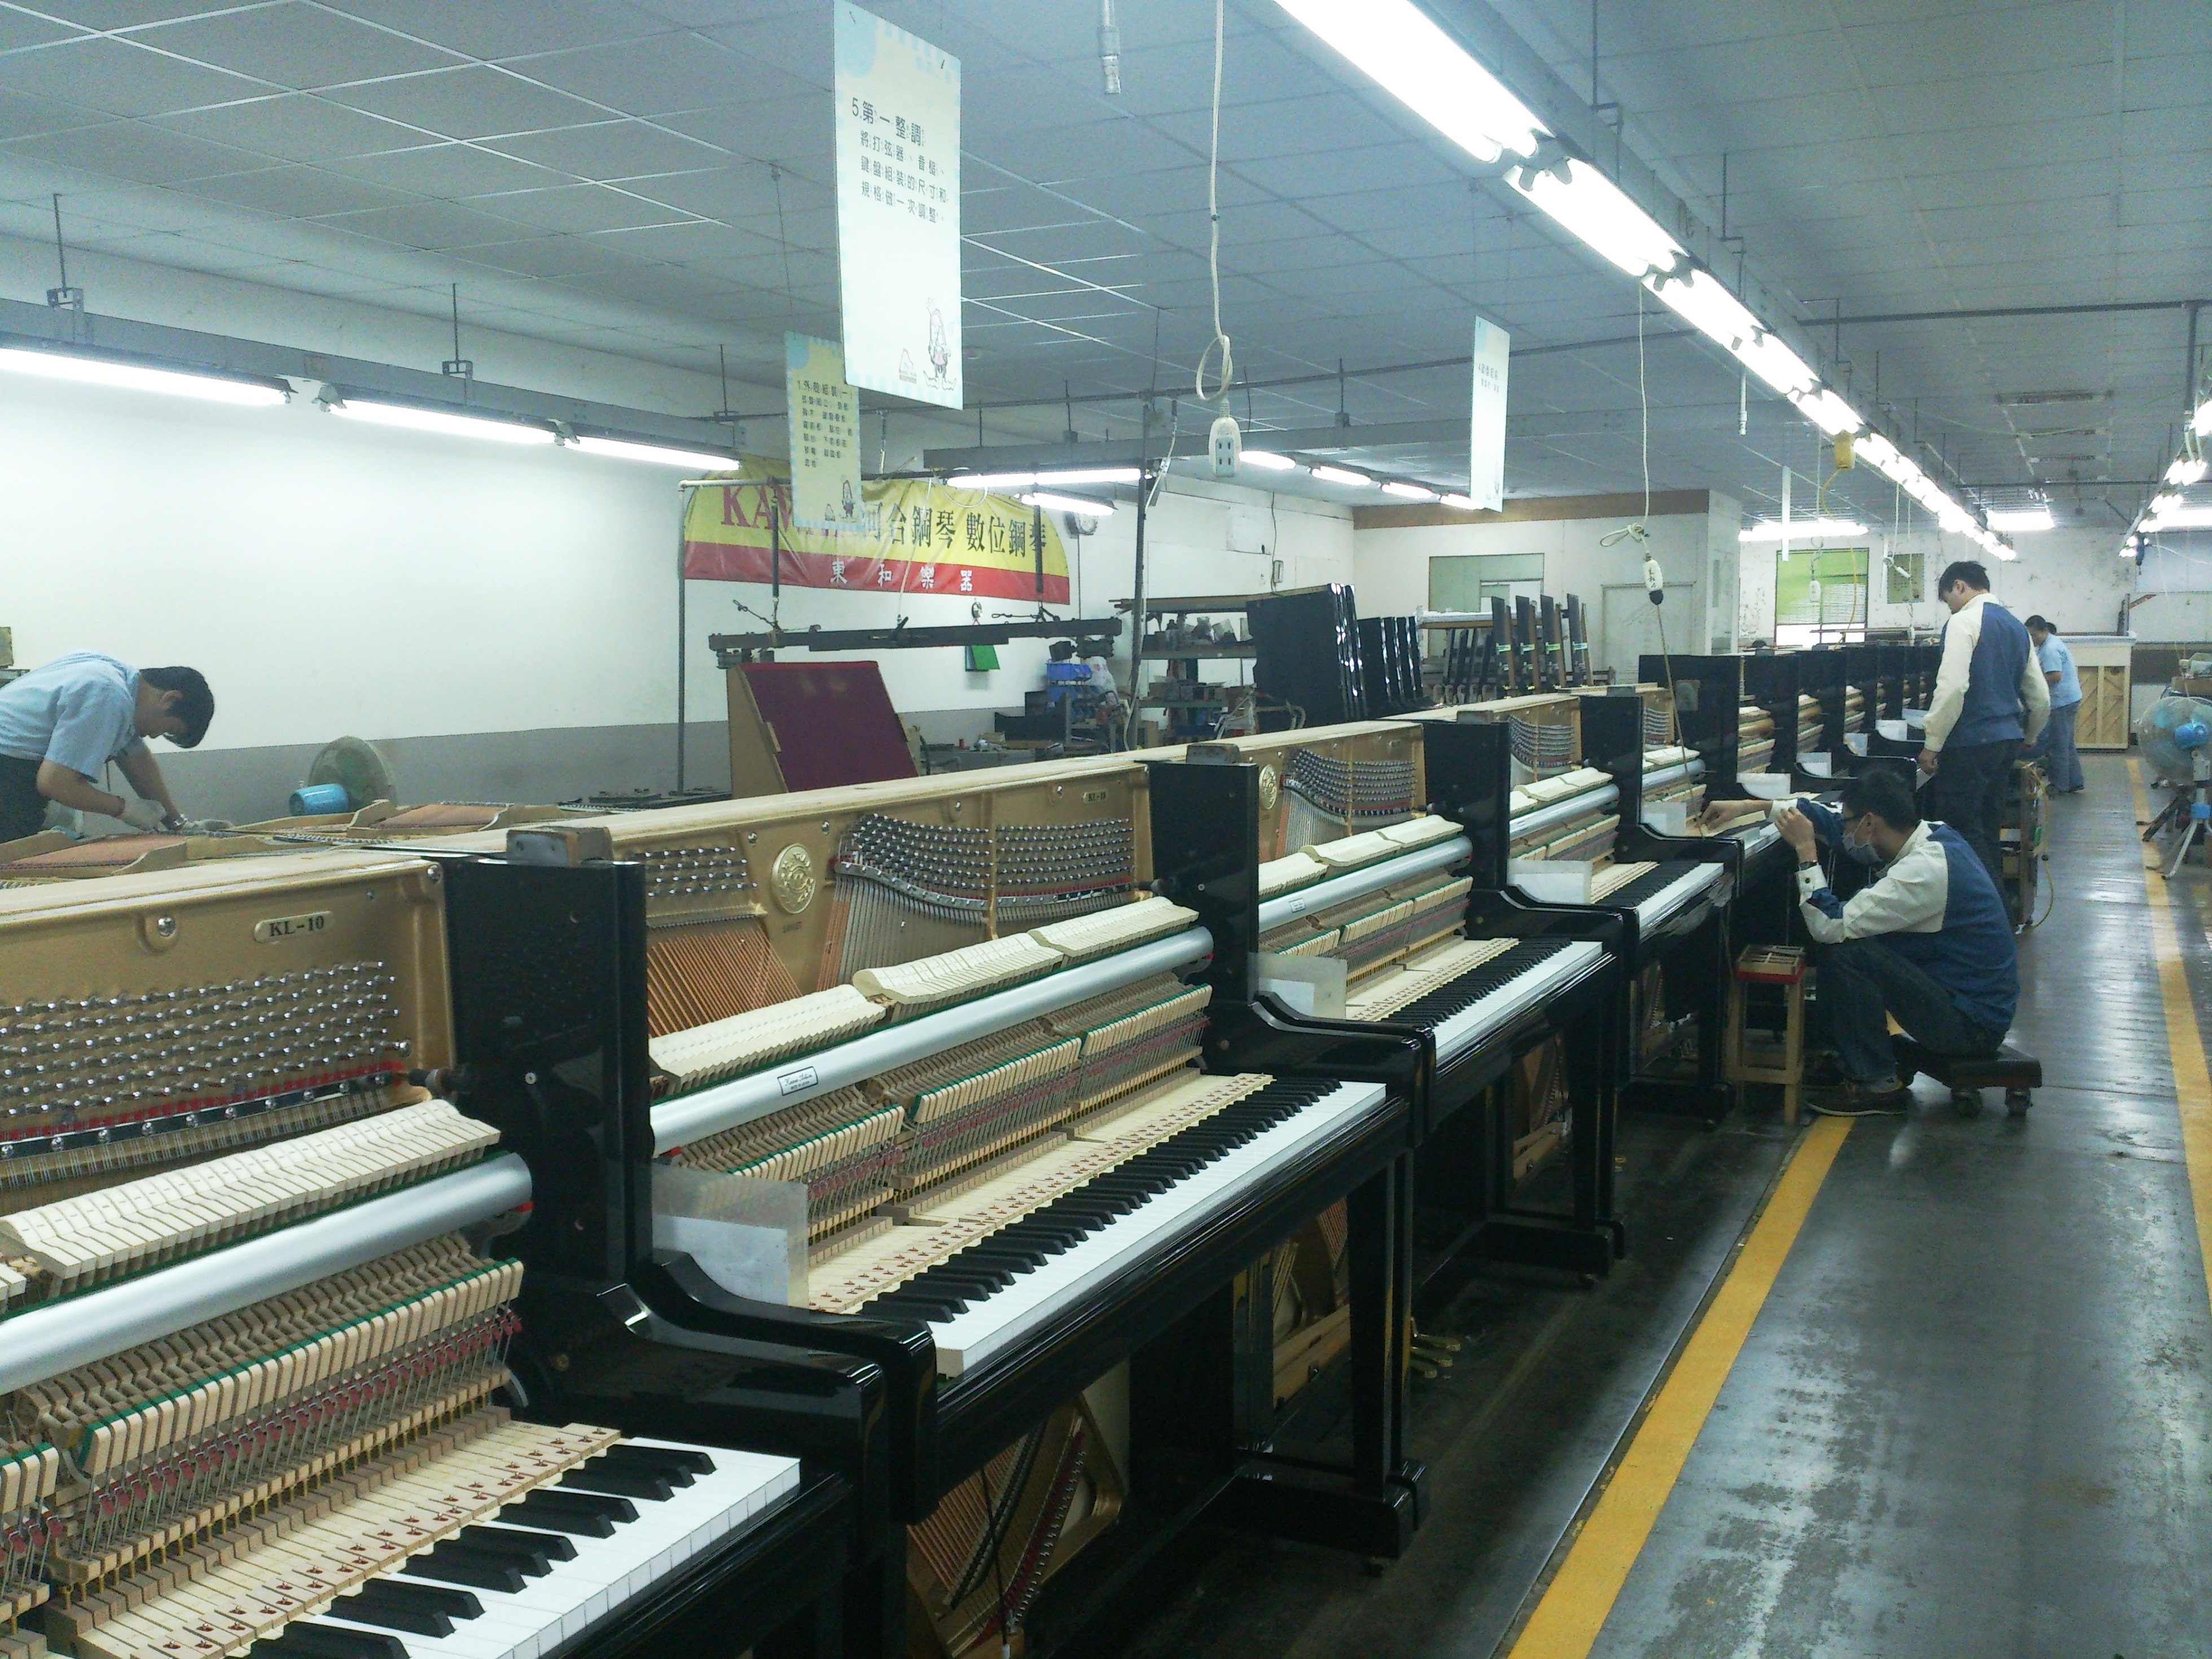 鋼琴工廠的照片